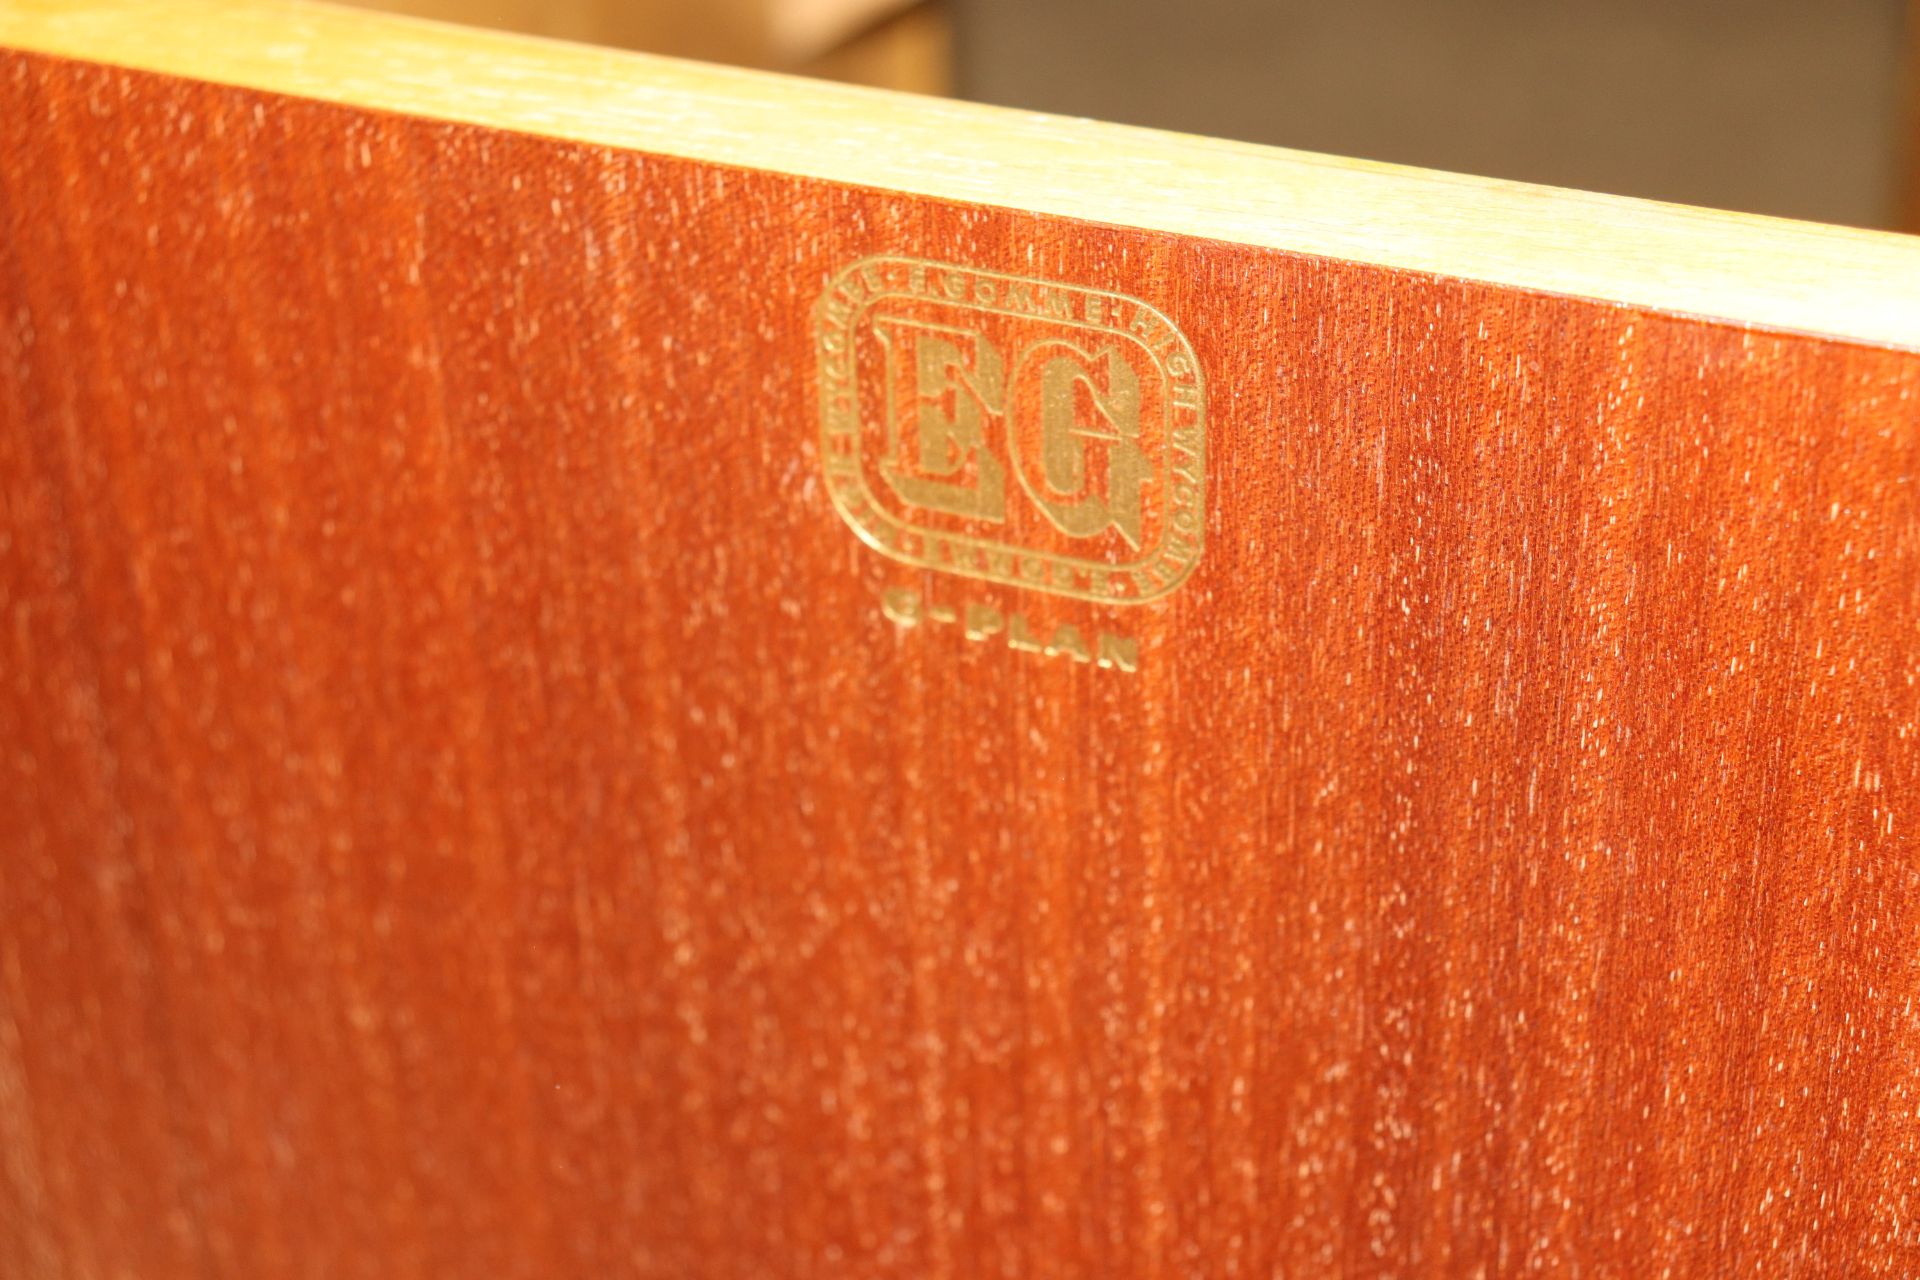 A pair of oak Arts & Crafts design bedside cabinet - Image 2 of 2